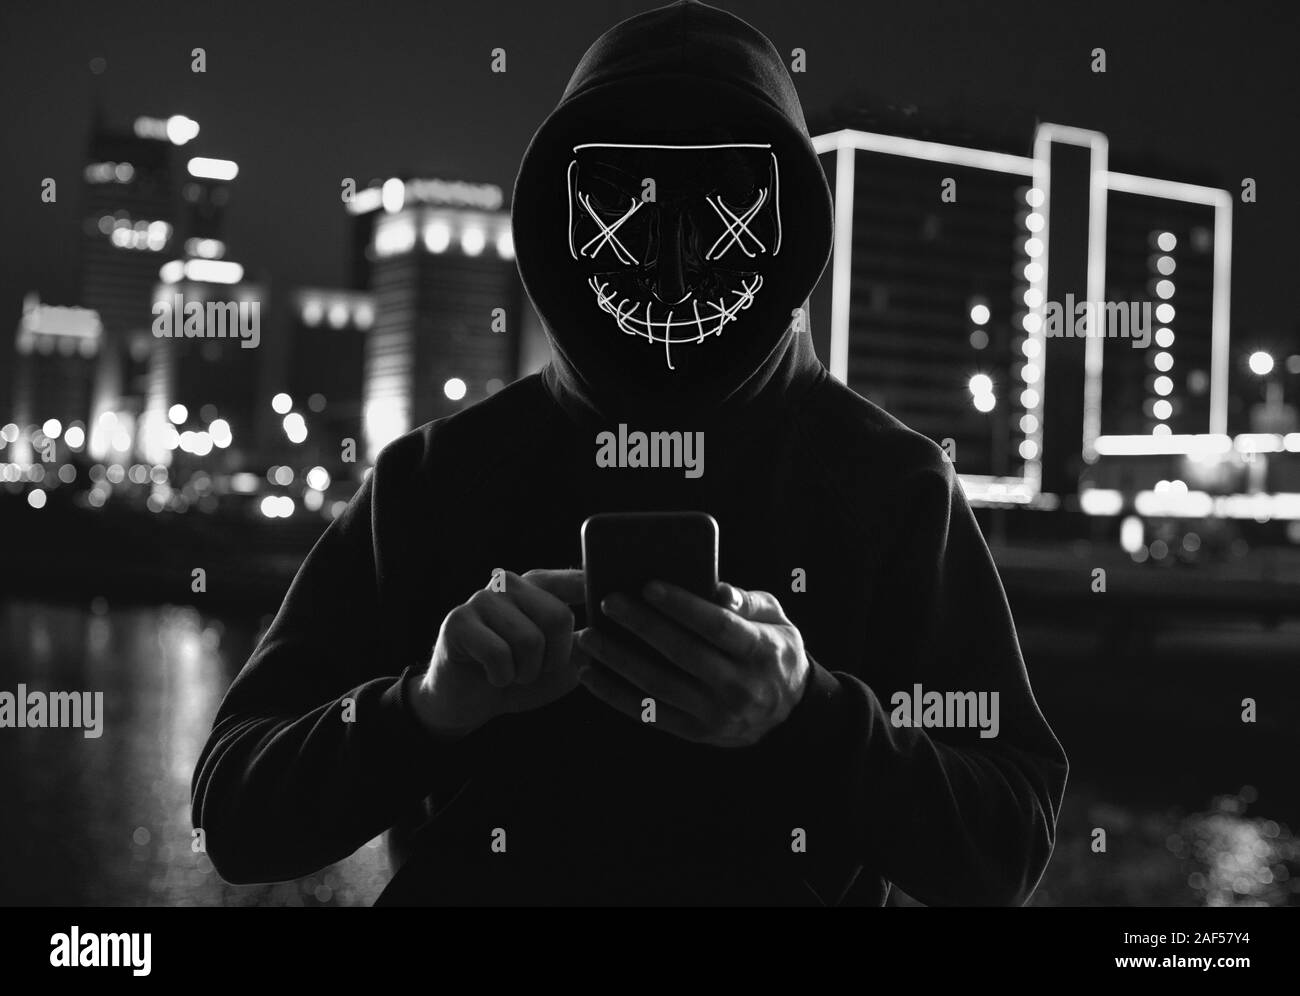 Porträt eines anonymen Mann in einem schwarzen Kapuzenpullover und Neon mask Hacker in ein Smartphone. Helle Stadt Hintergrund Stockfoto